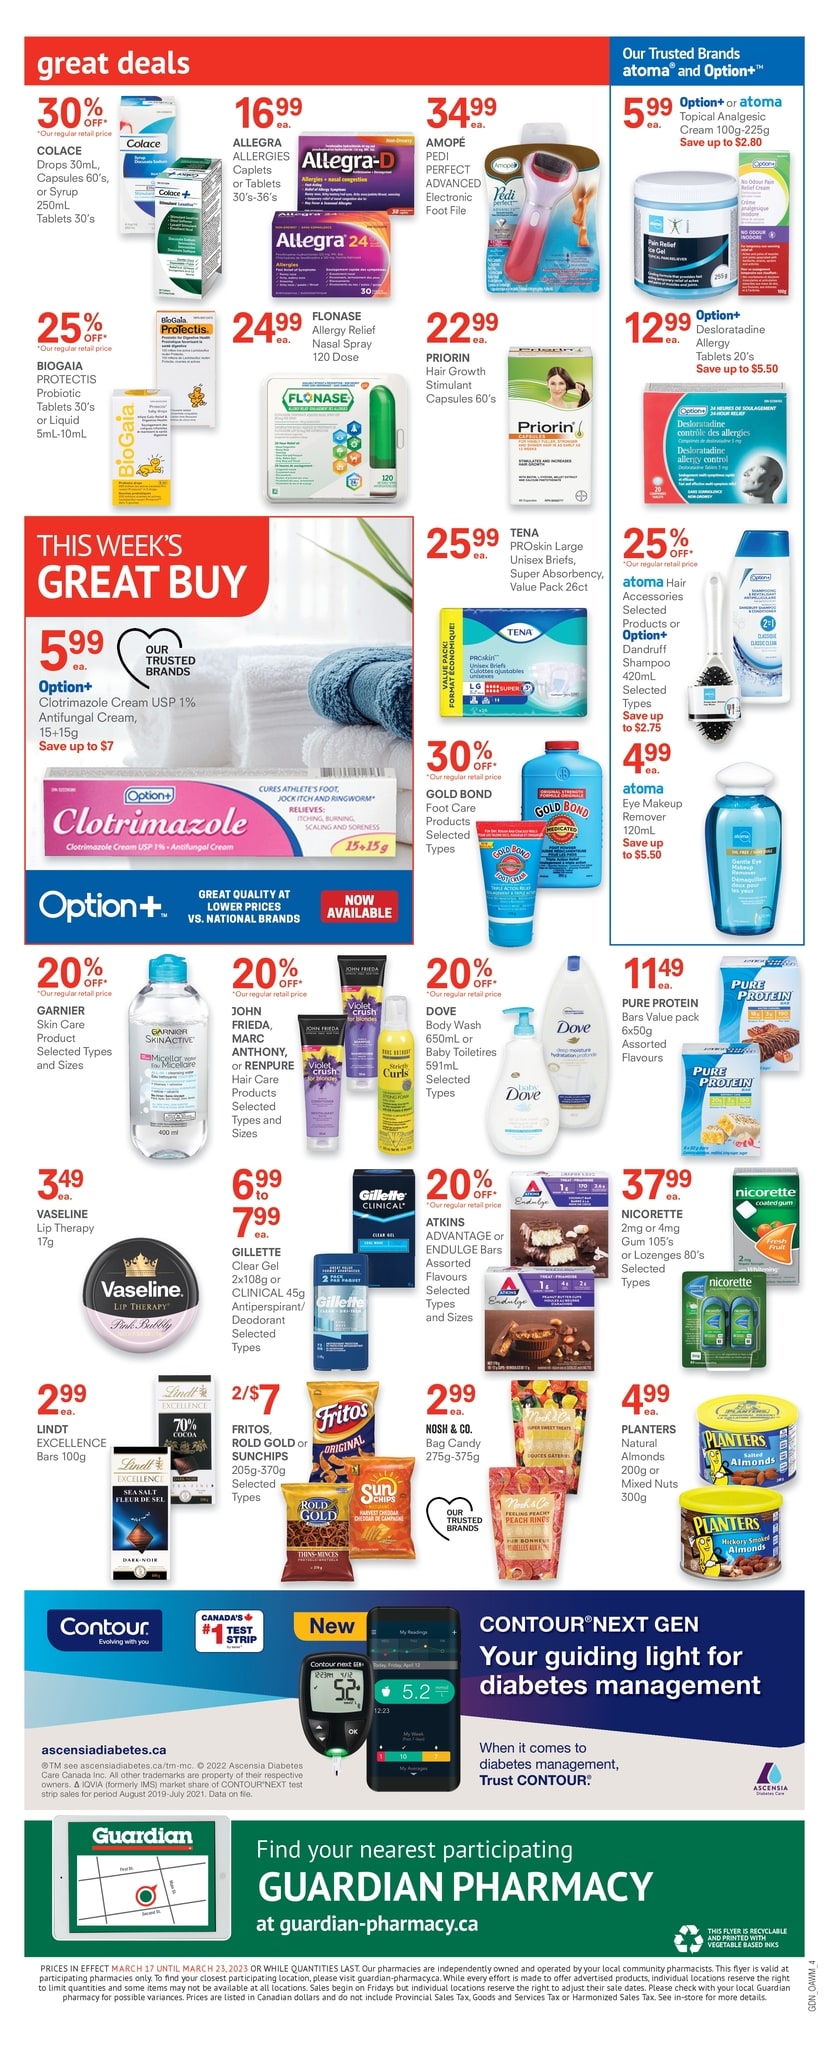 Guardian IDA Pharmacies - Weekly Flyer Specials - Page 8